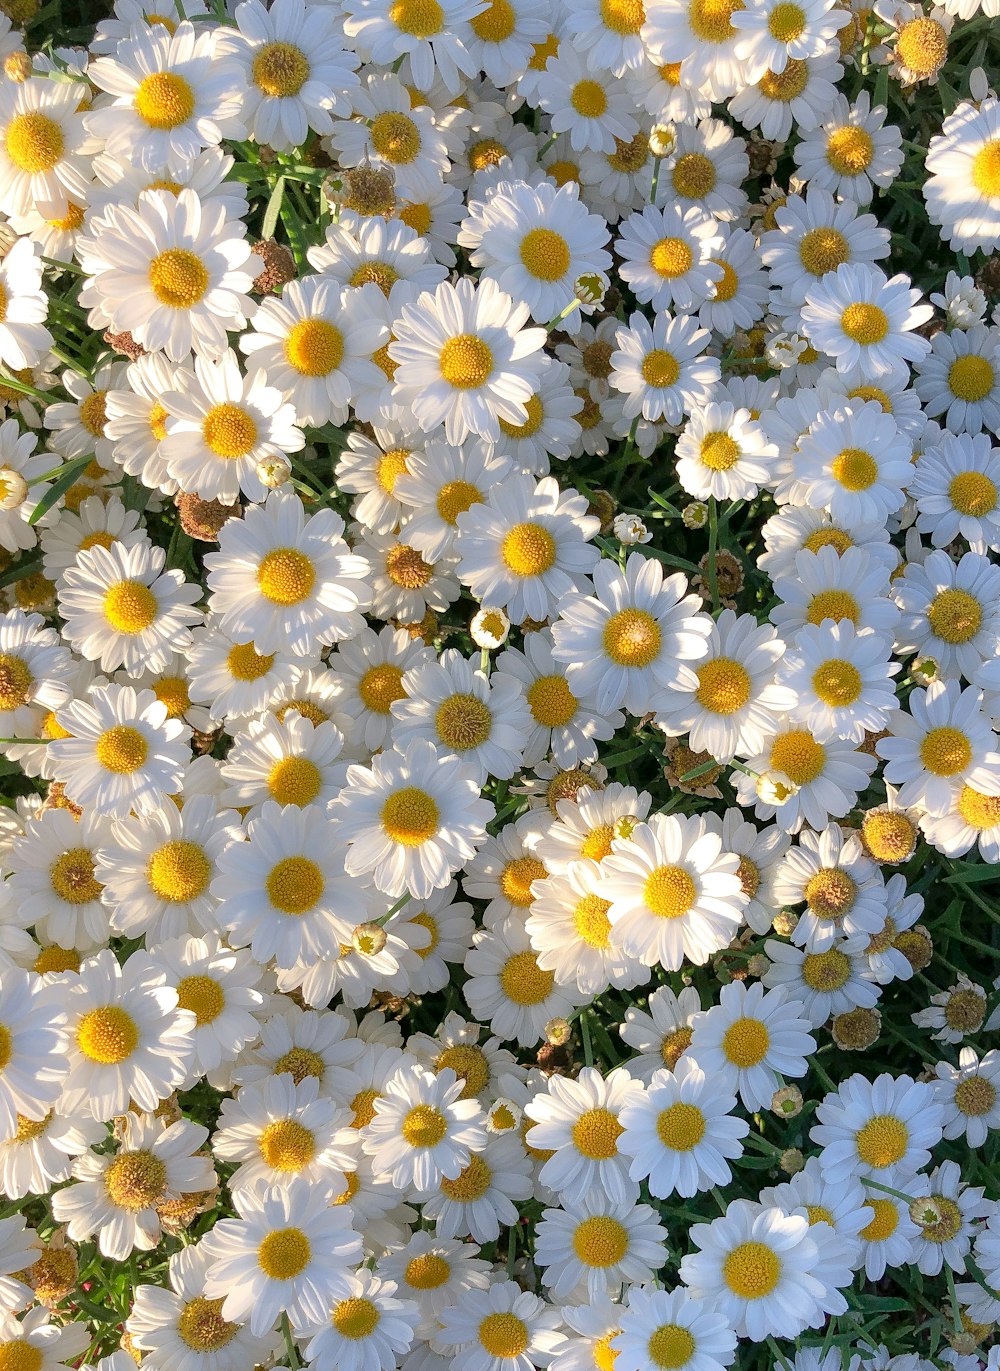 Flores de margaritas blancas y amarillas